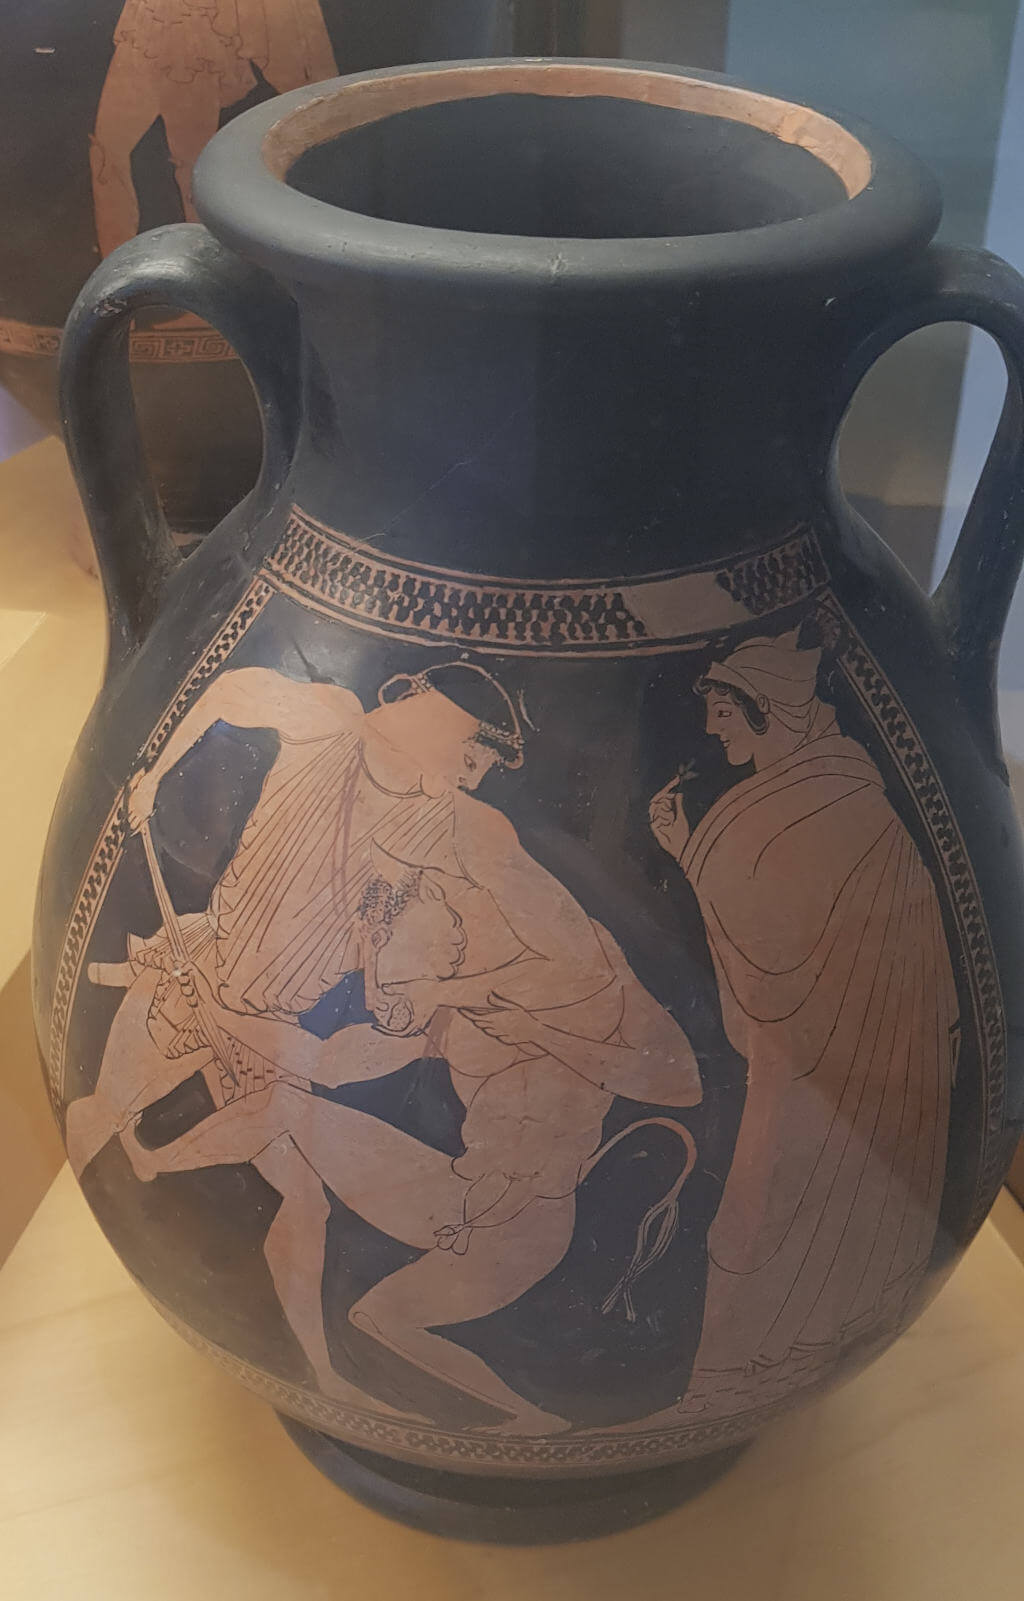 Theseus kämpft gegen den Minotaurus - Darstellung auf einer Vase in den Vatikanische Museen